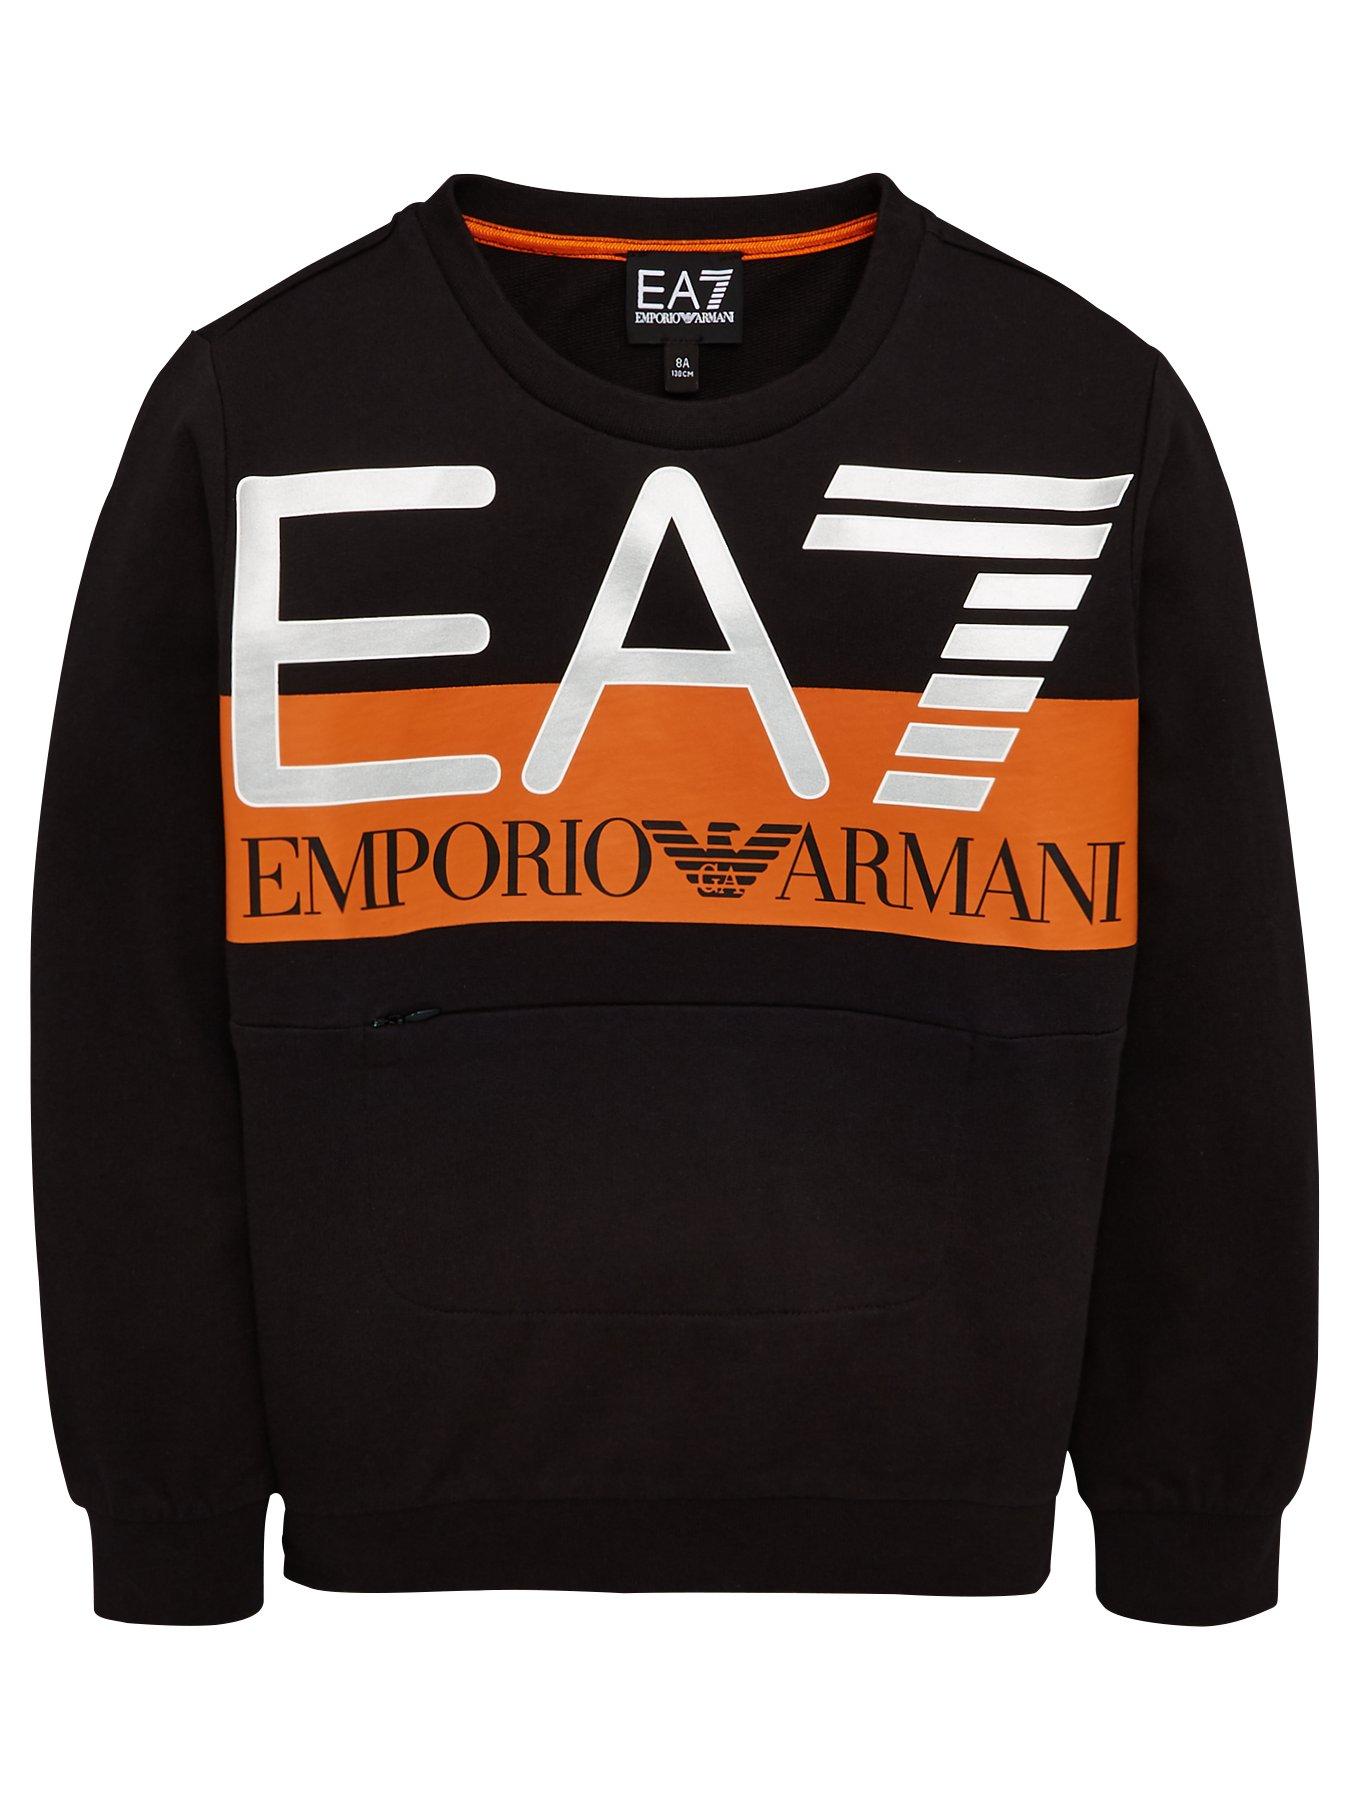 EA7 Emporio Armani Boys Crew Neck 